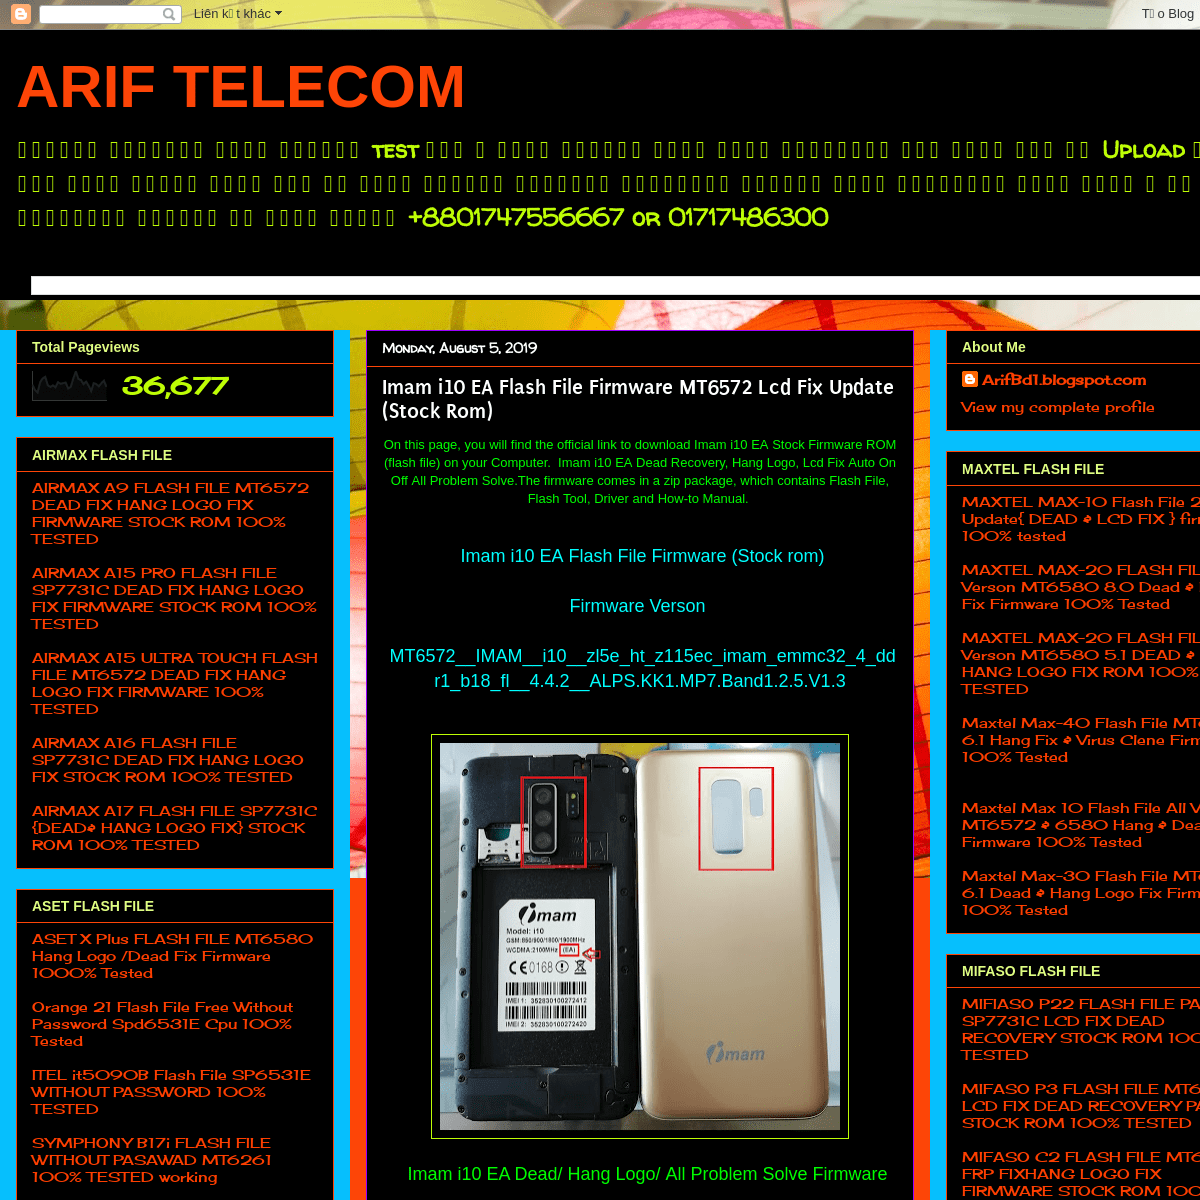 ARIF TELECOM